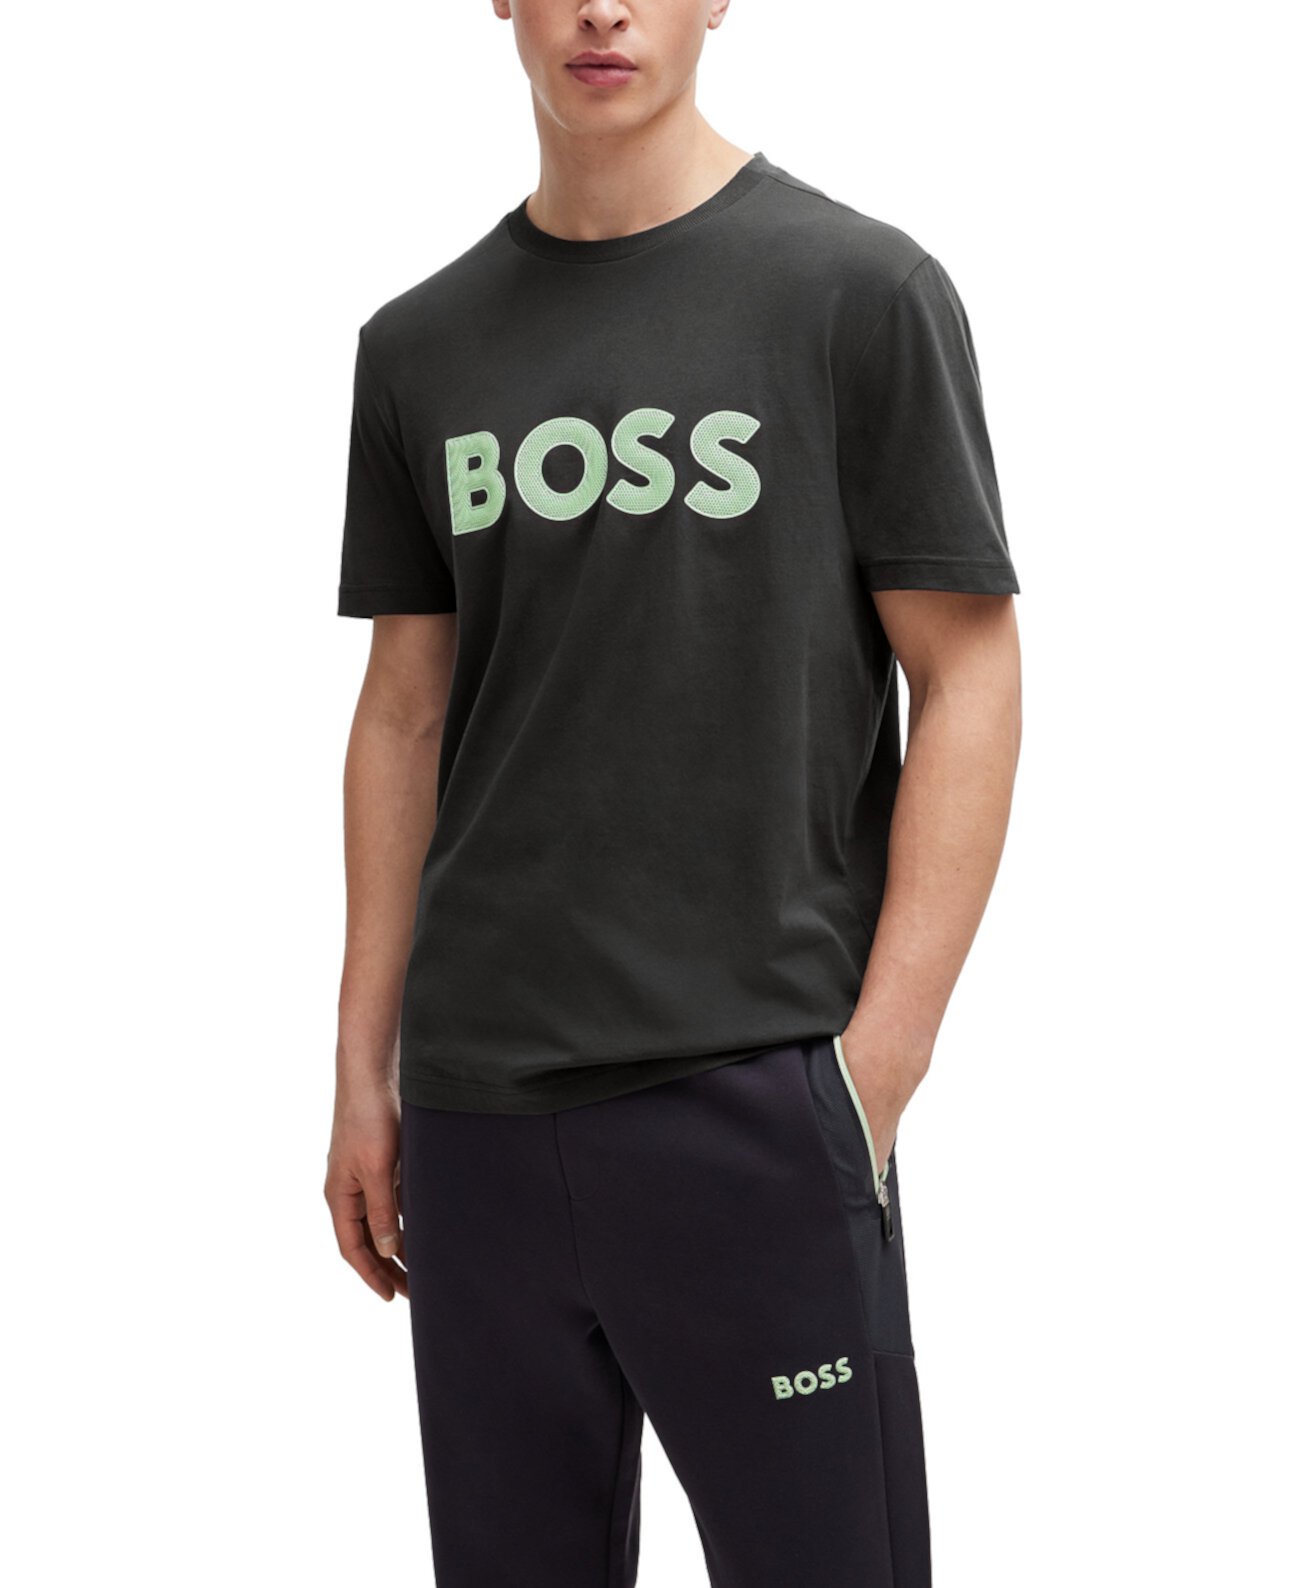 Мужская хлопковая футболка с логотипом BOSS в стиле сетки BOSS